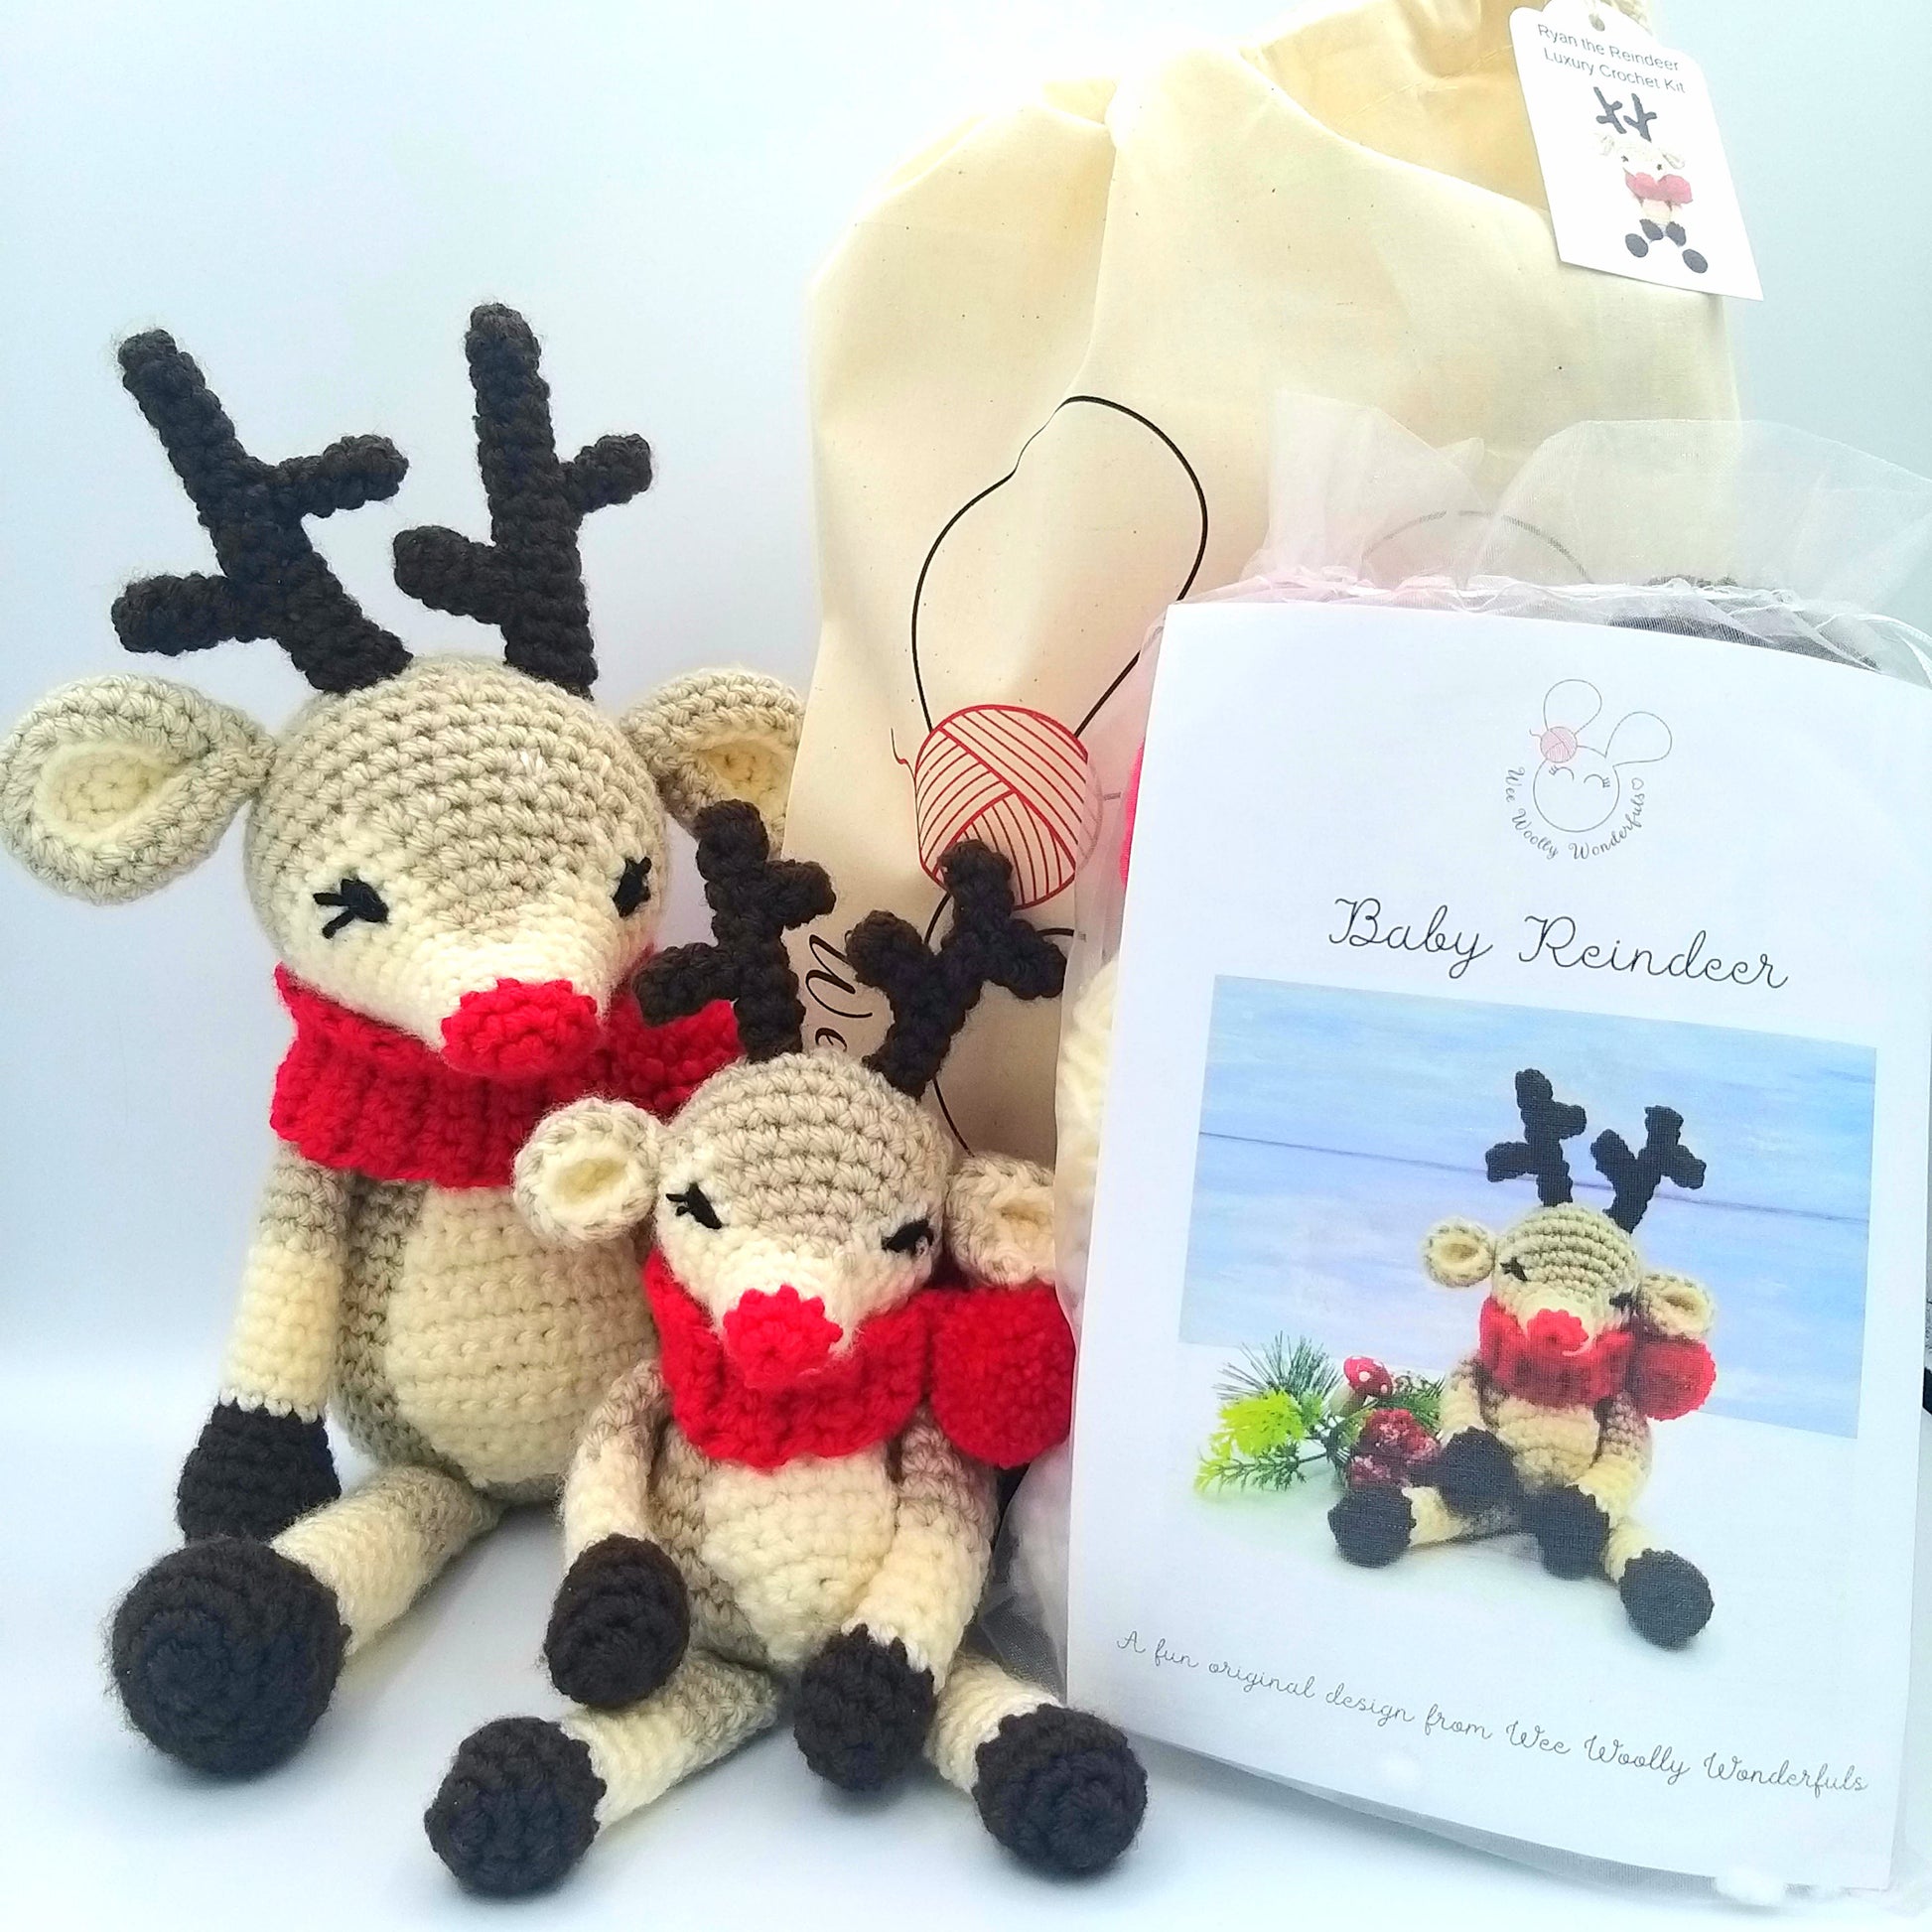 Ryan the Reindeer Crochet Kit - Amigurumi Reindeer – Wee Woolly Wonderfuls